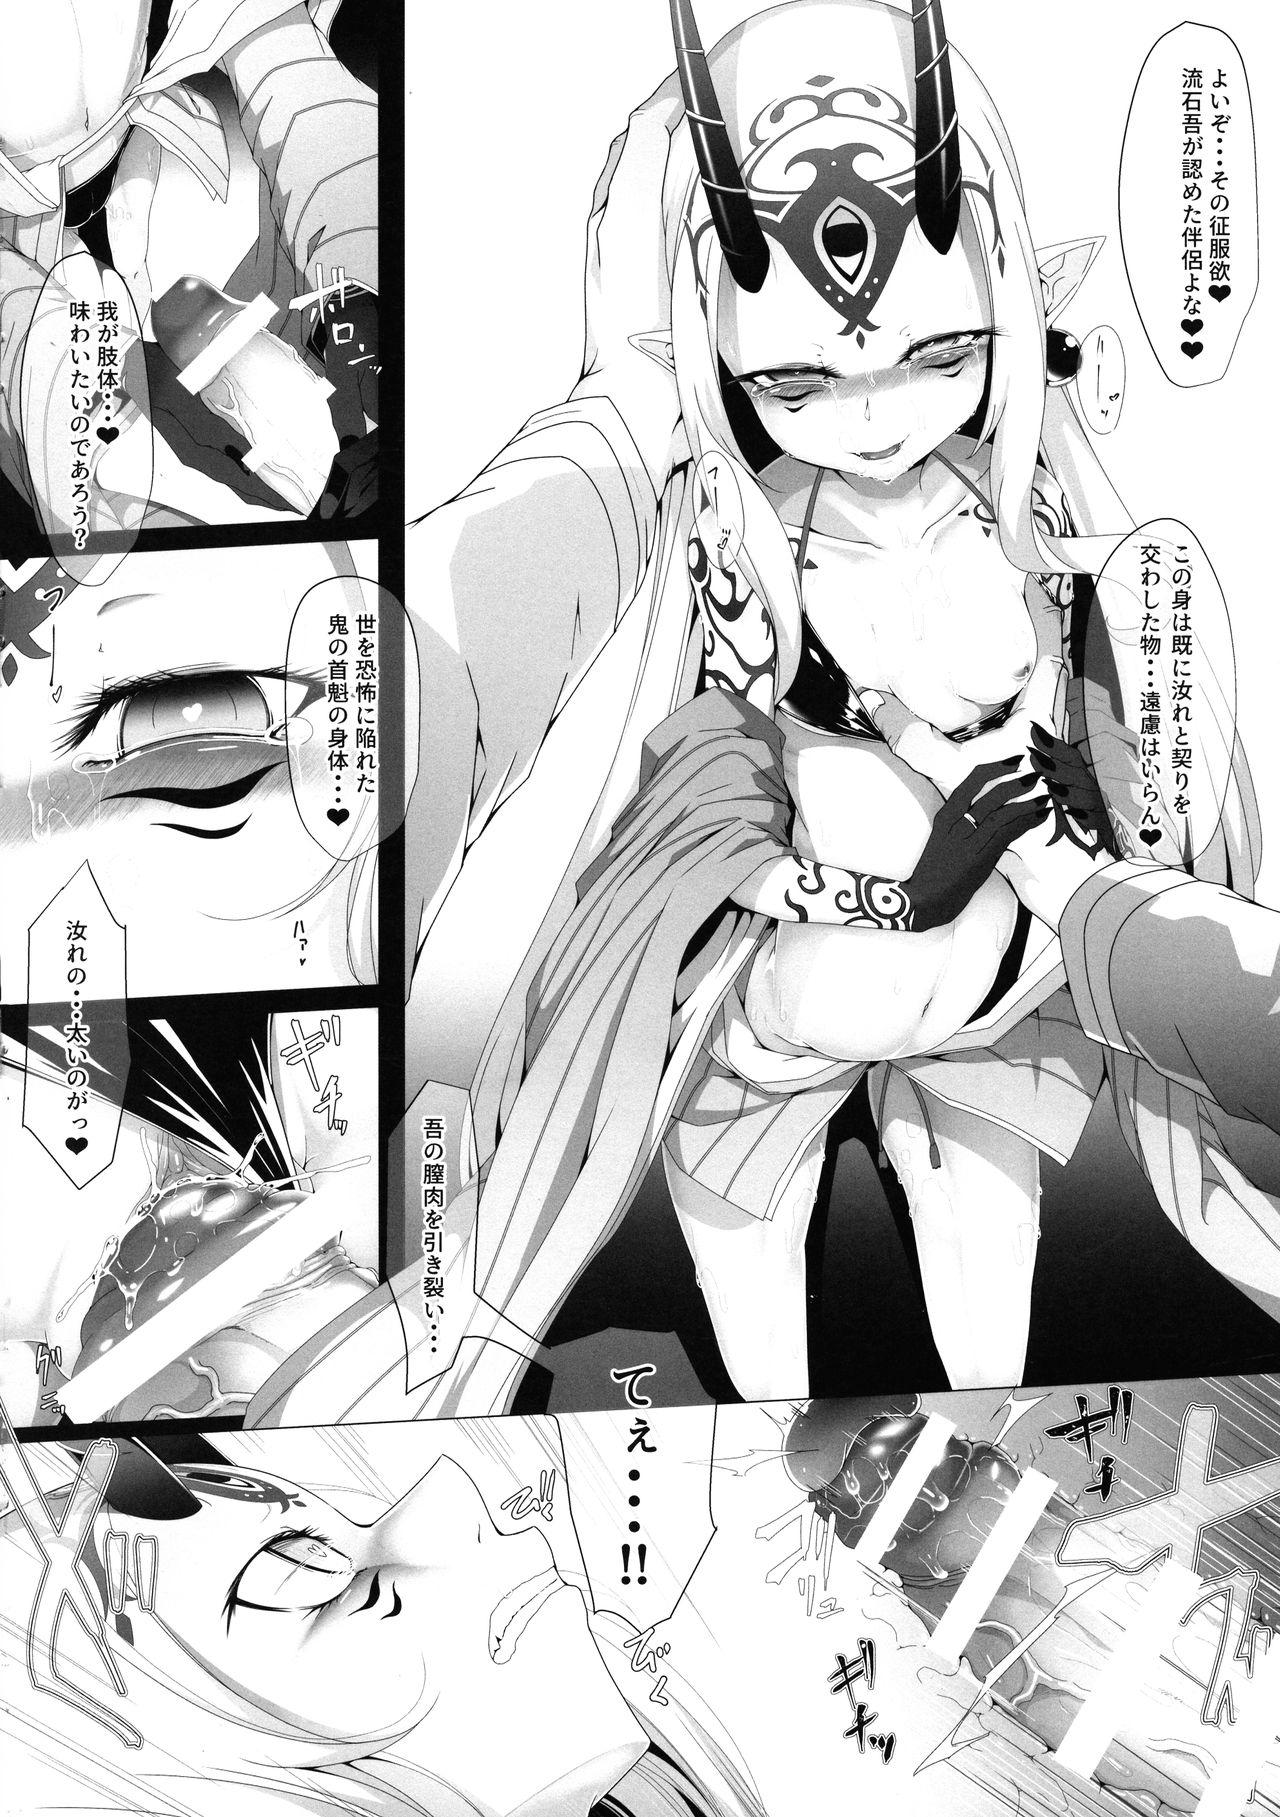 Tgirl M.P. Vol. 20 - Fate grand order Passionate - Page 6